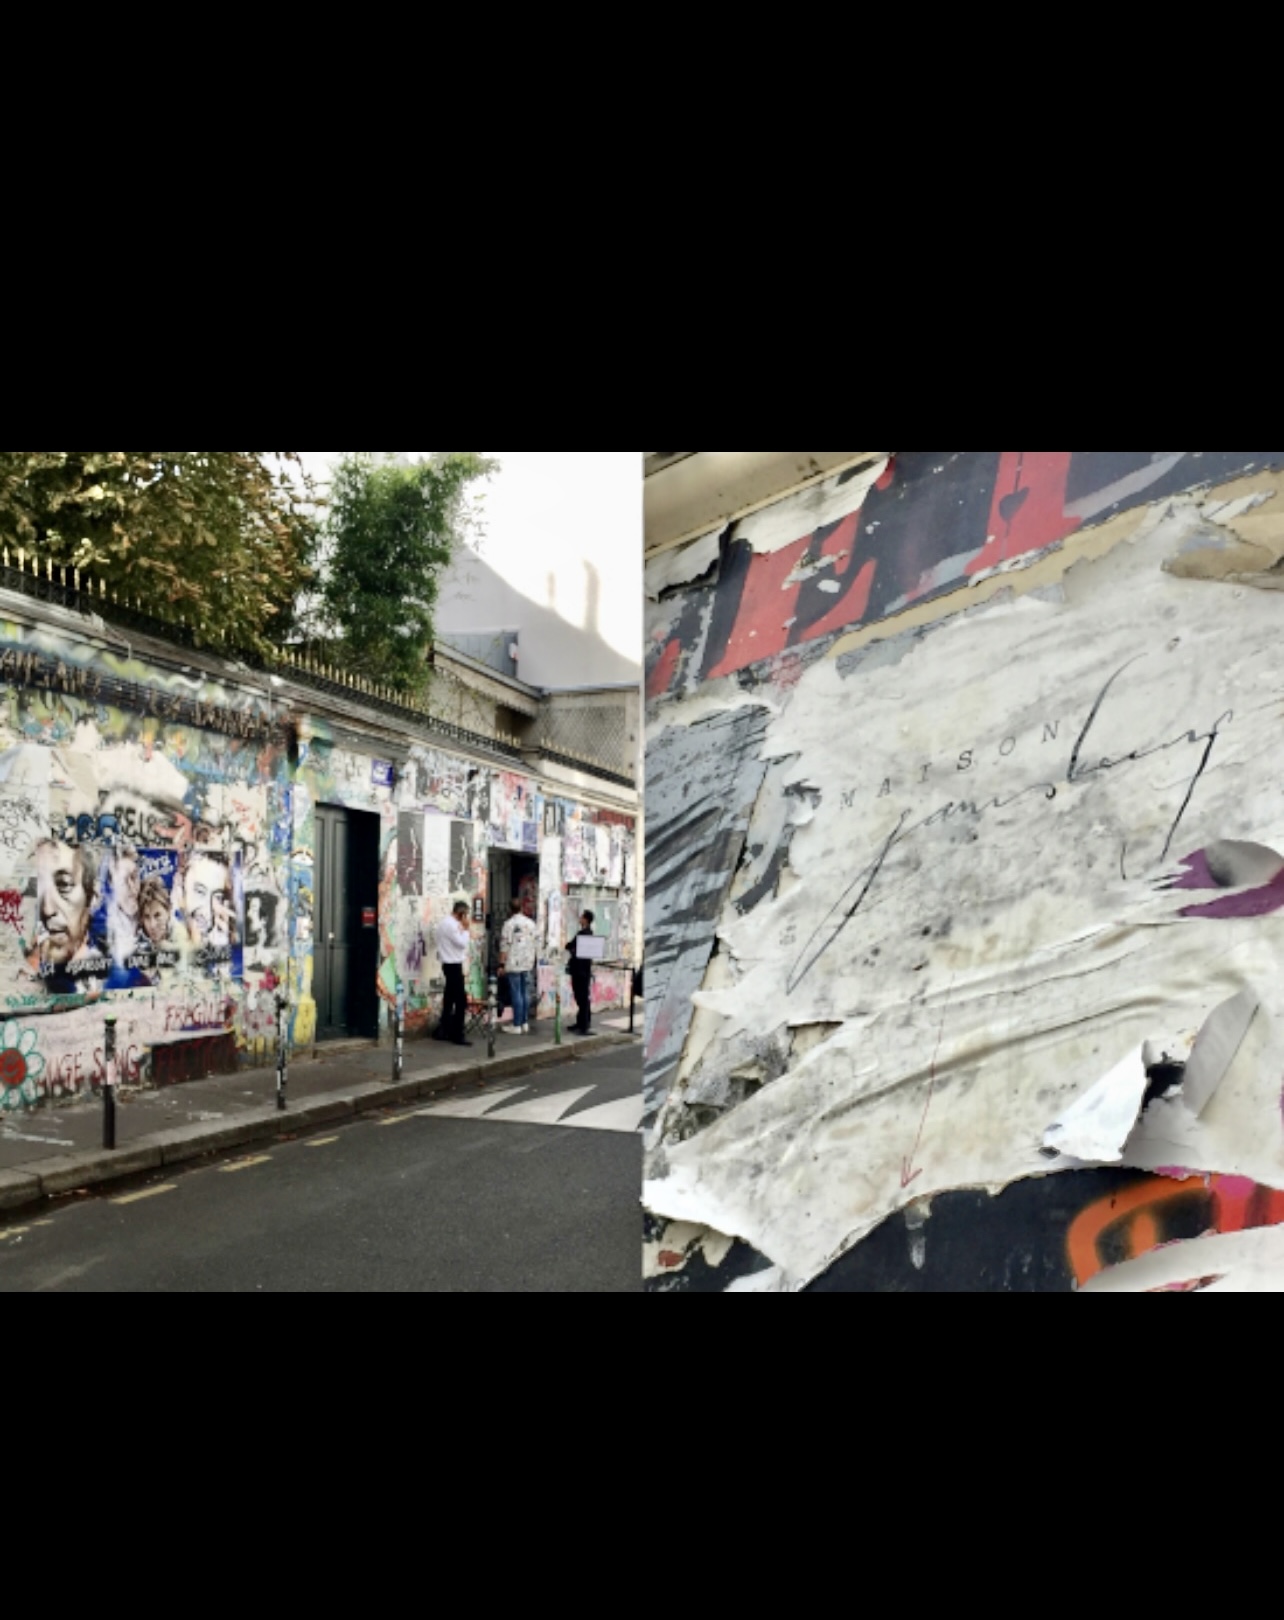 Deux photos d'une rue avec des graffitis, comportant le tag emblématique "Le feu Gainsbarre" de Gainsbourg.